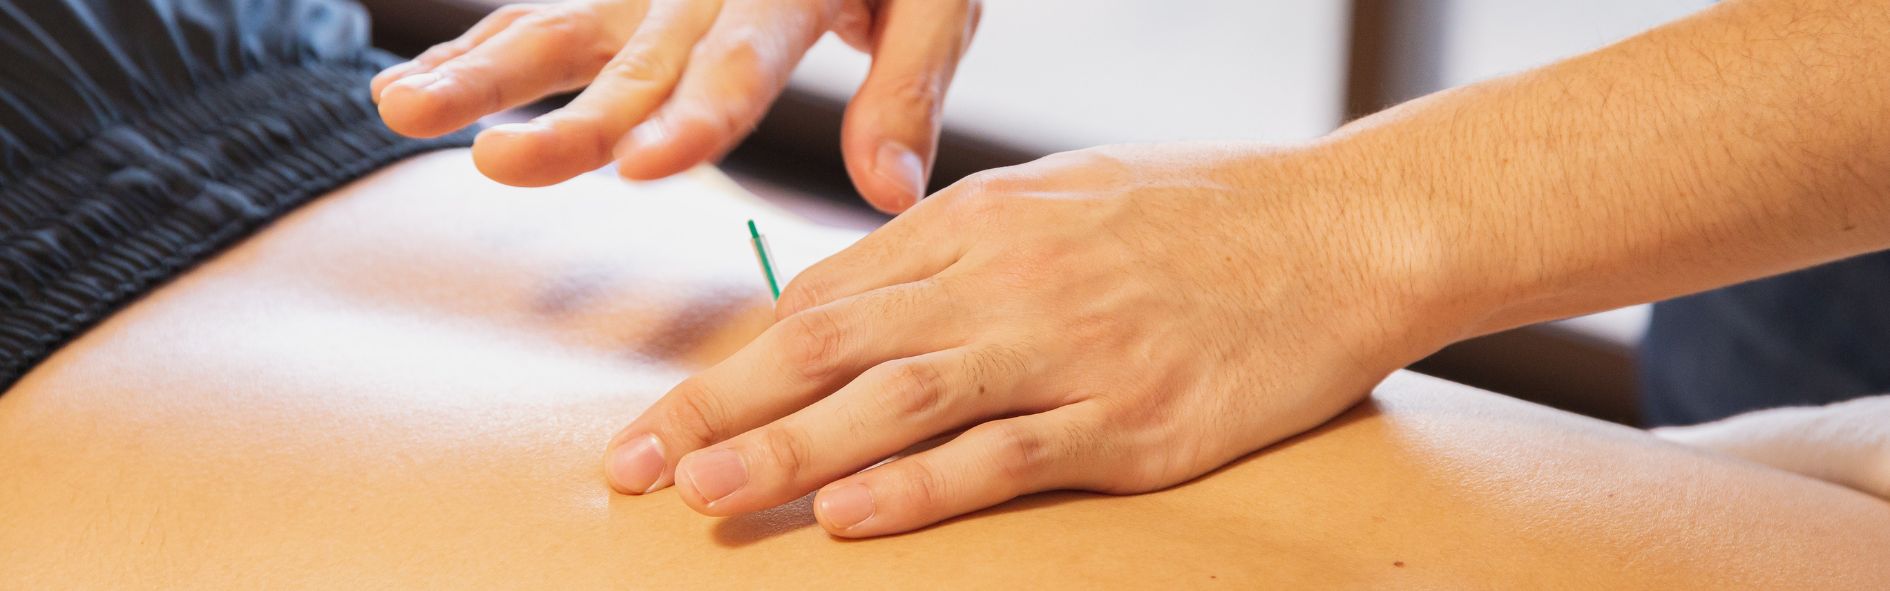 Tipos de agujas de acupuntura y duración del tratamiento